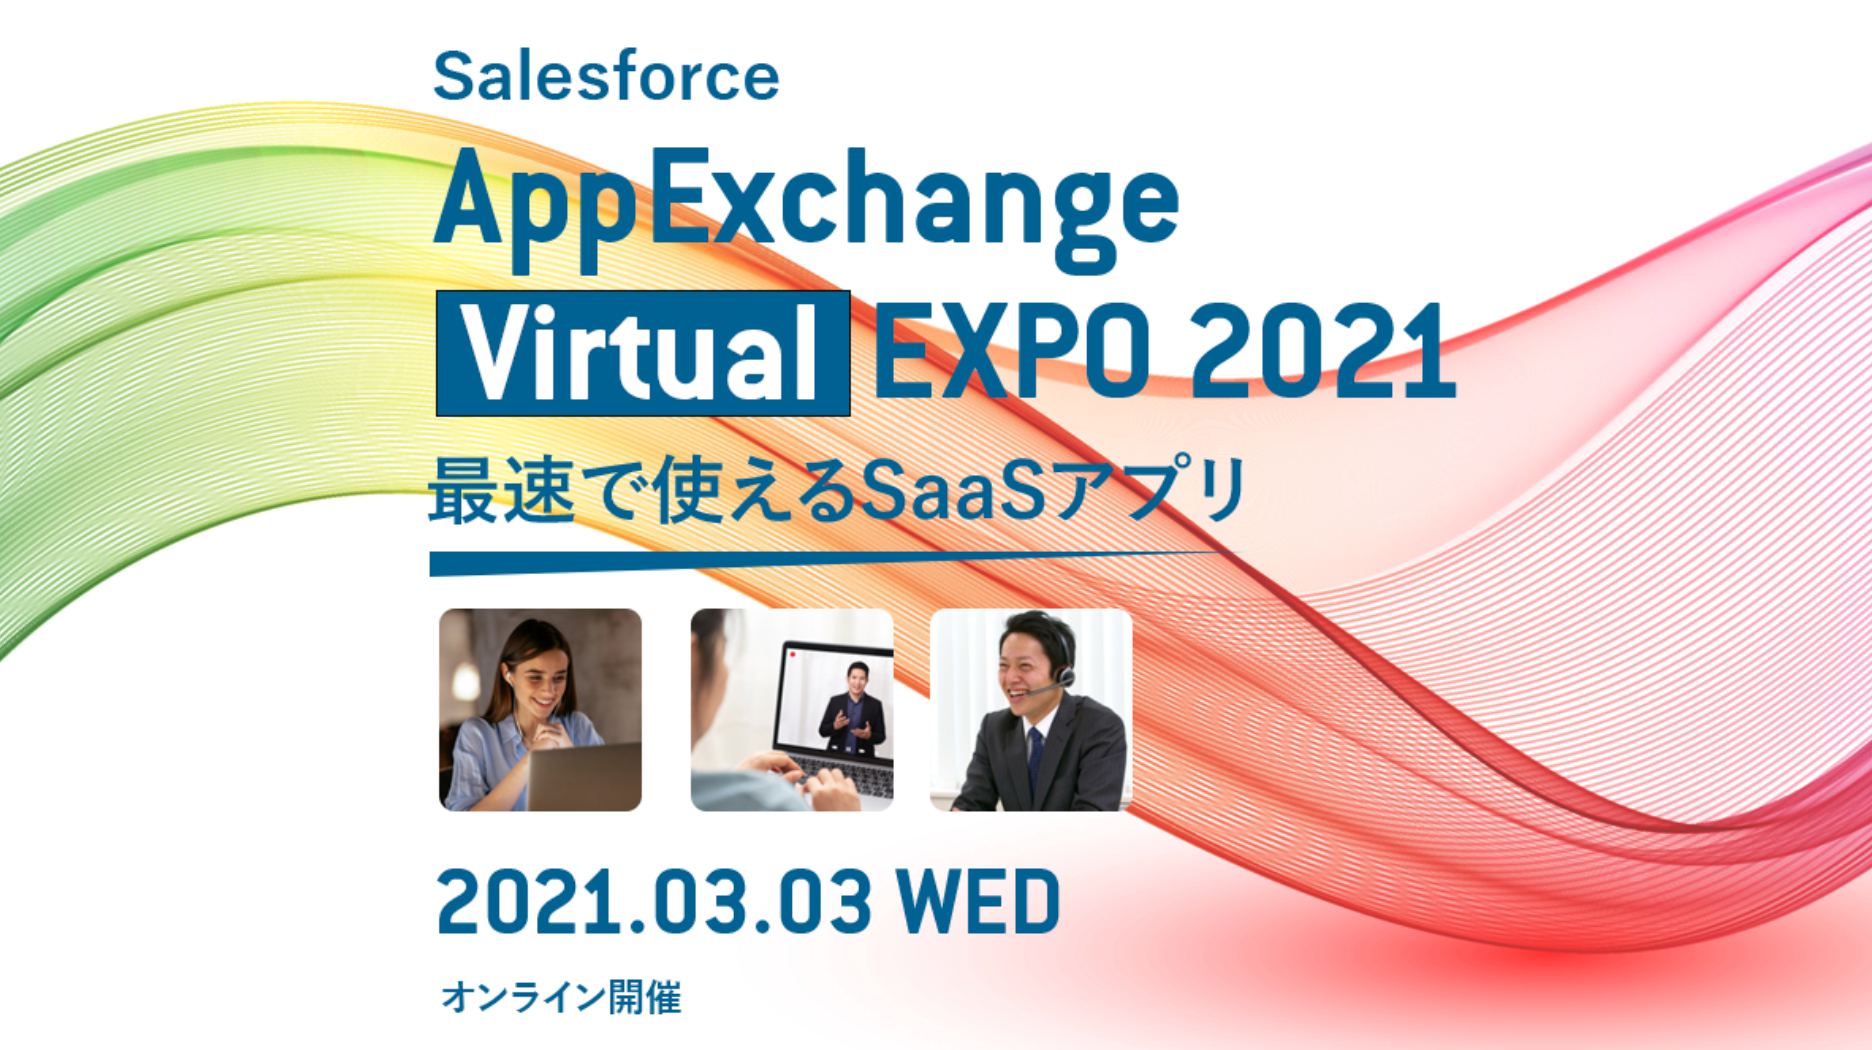 AppExchange VirtualEXPO 2021